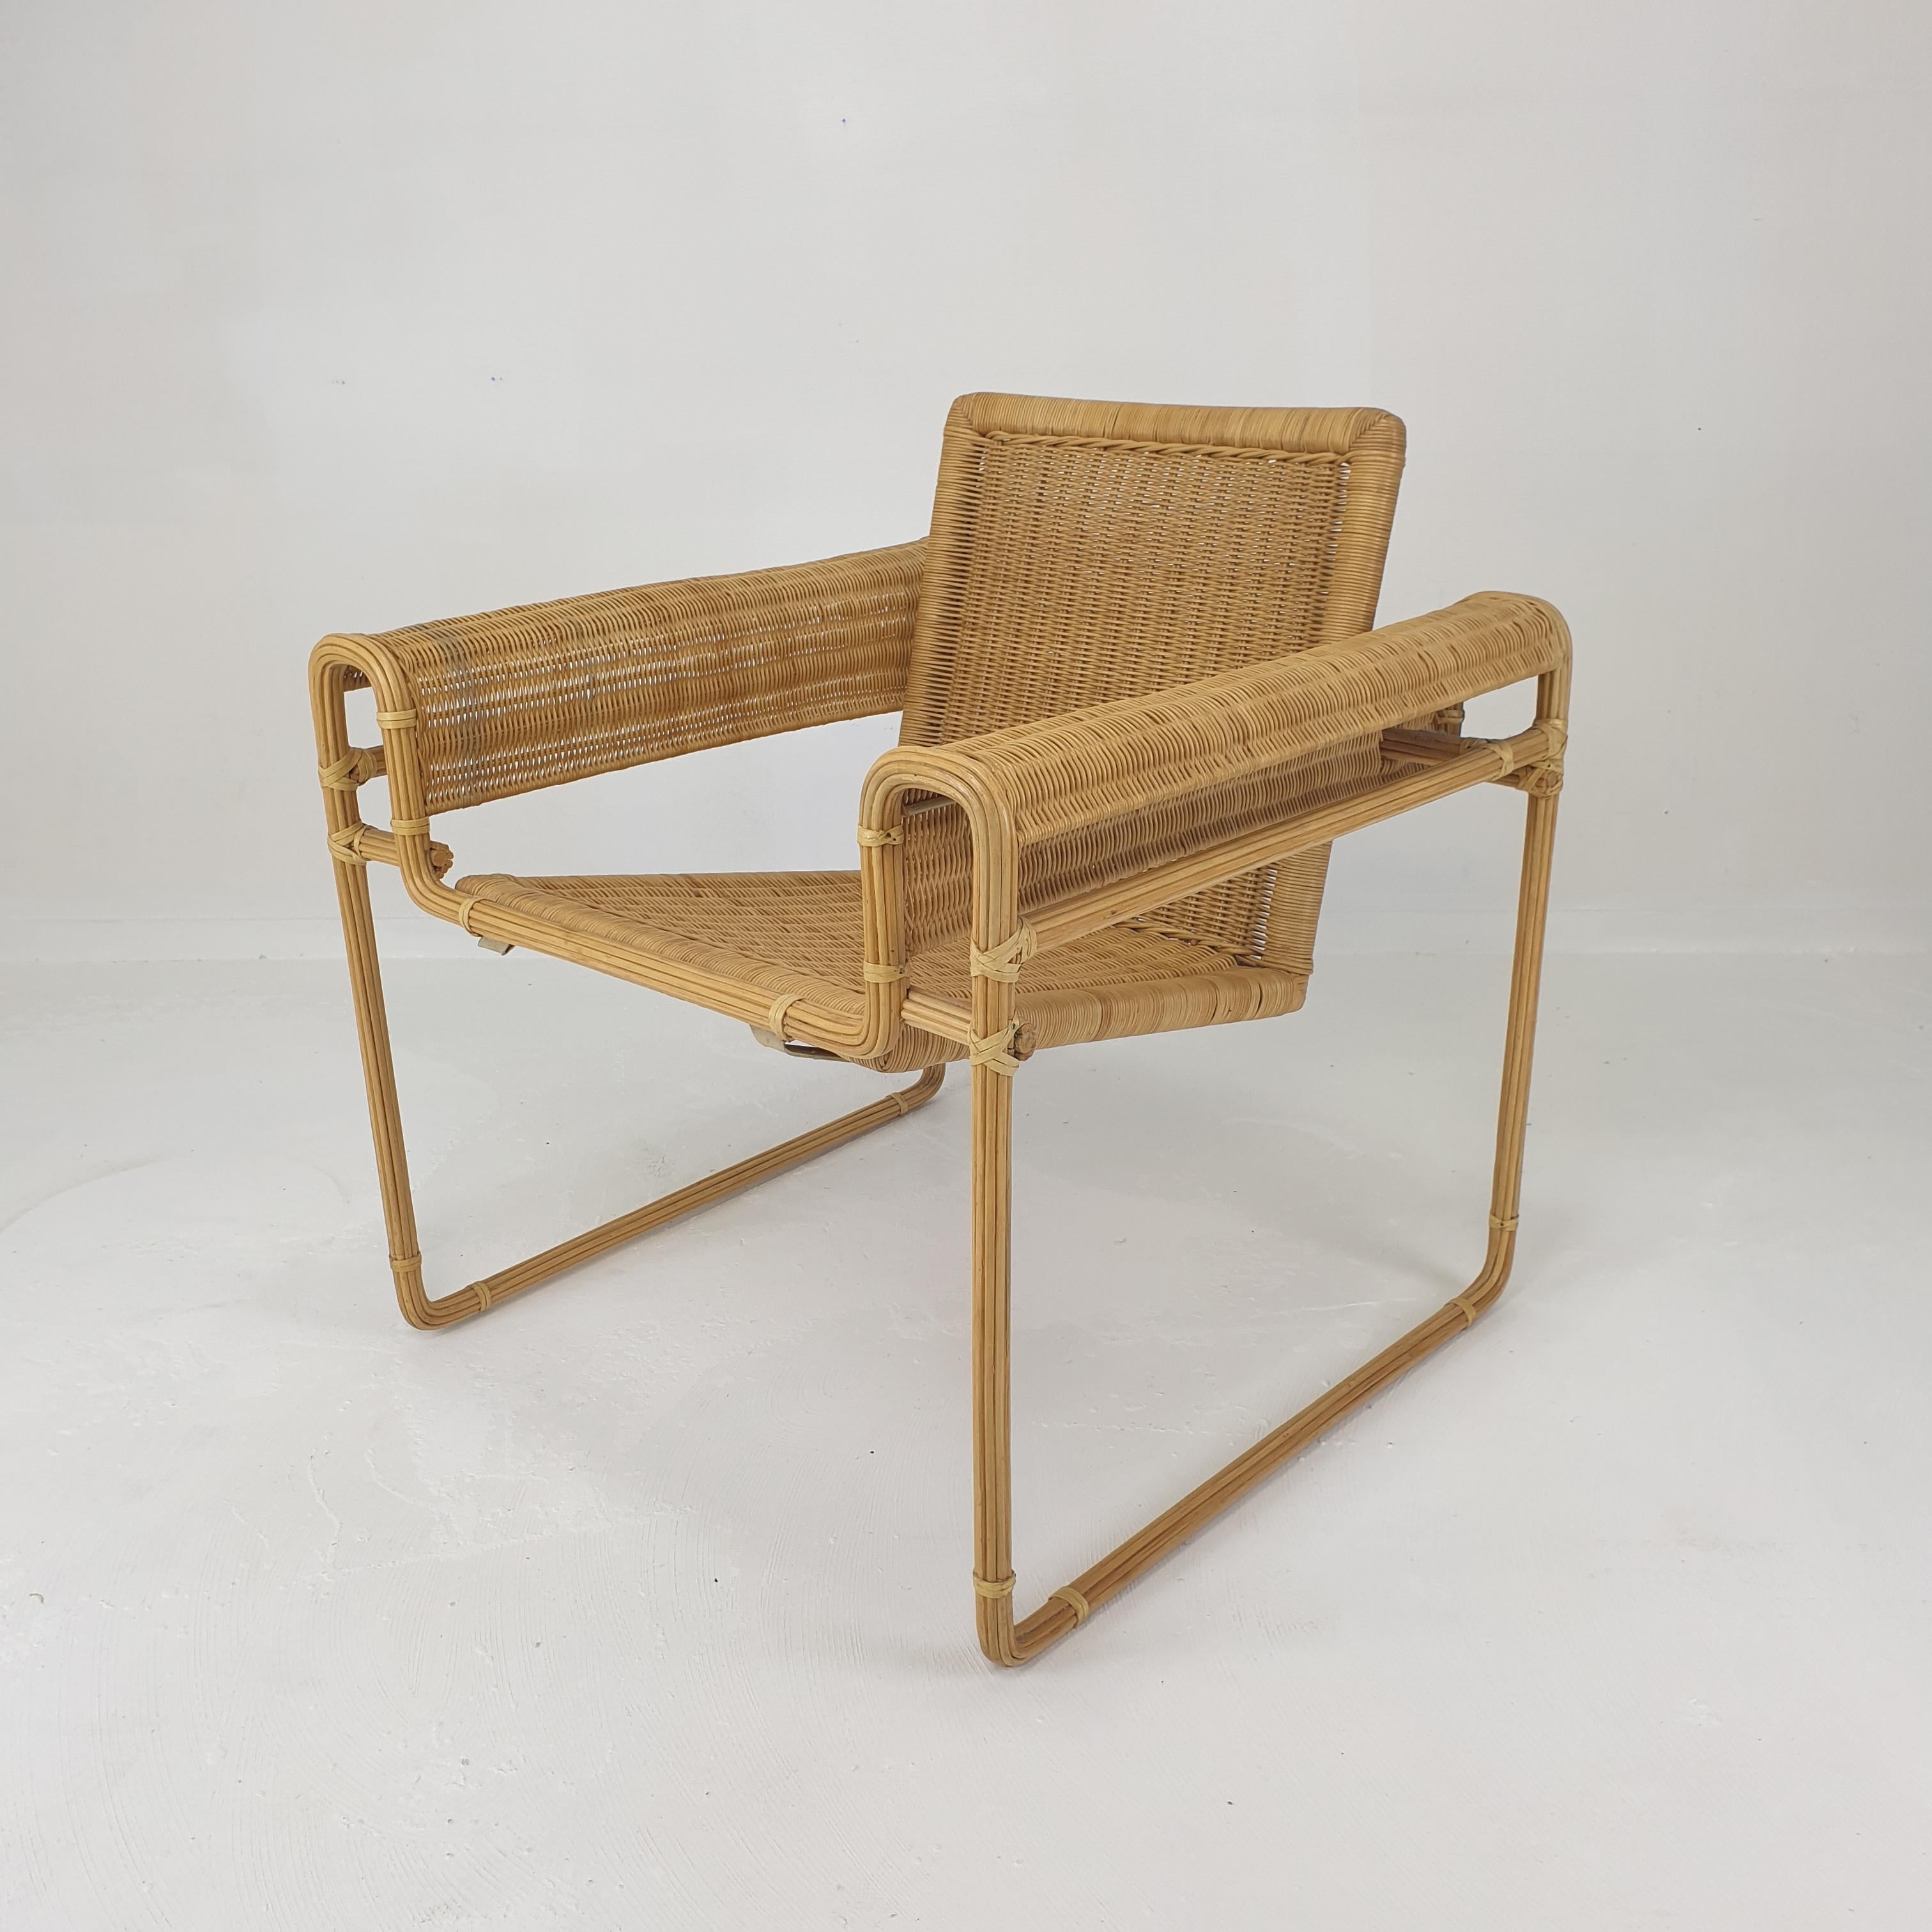 Une paire très rare de chaises en osier, fabriquées aux Pays-Bas, dans les années 1970.
Il s'agit d'une traduction unique de la chaise Wassily de Marcel Breuer. 

La structure métallique est recouverte de bandes de bambou laqué, l'assise et le